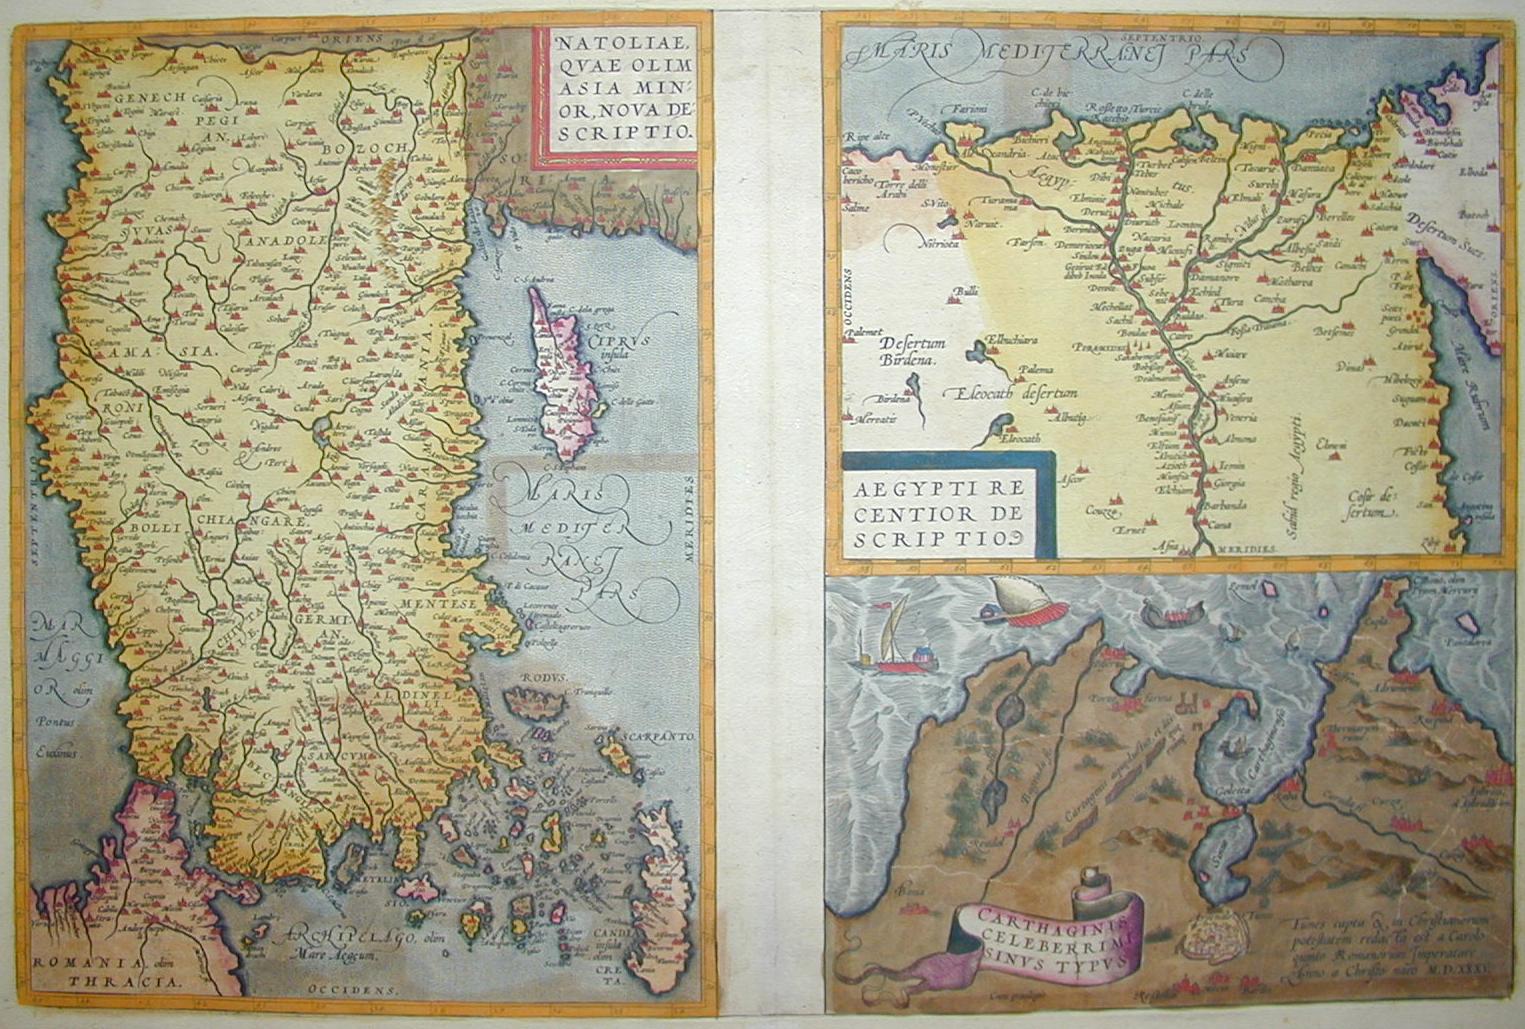 Turchia, Egitto e Tunisia 1550